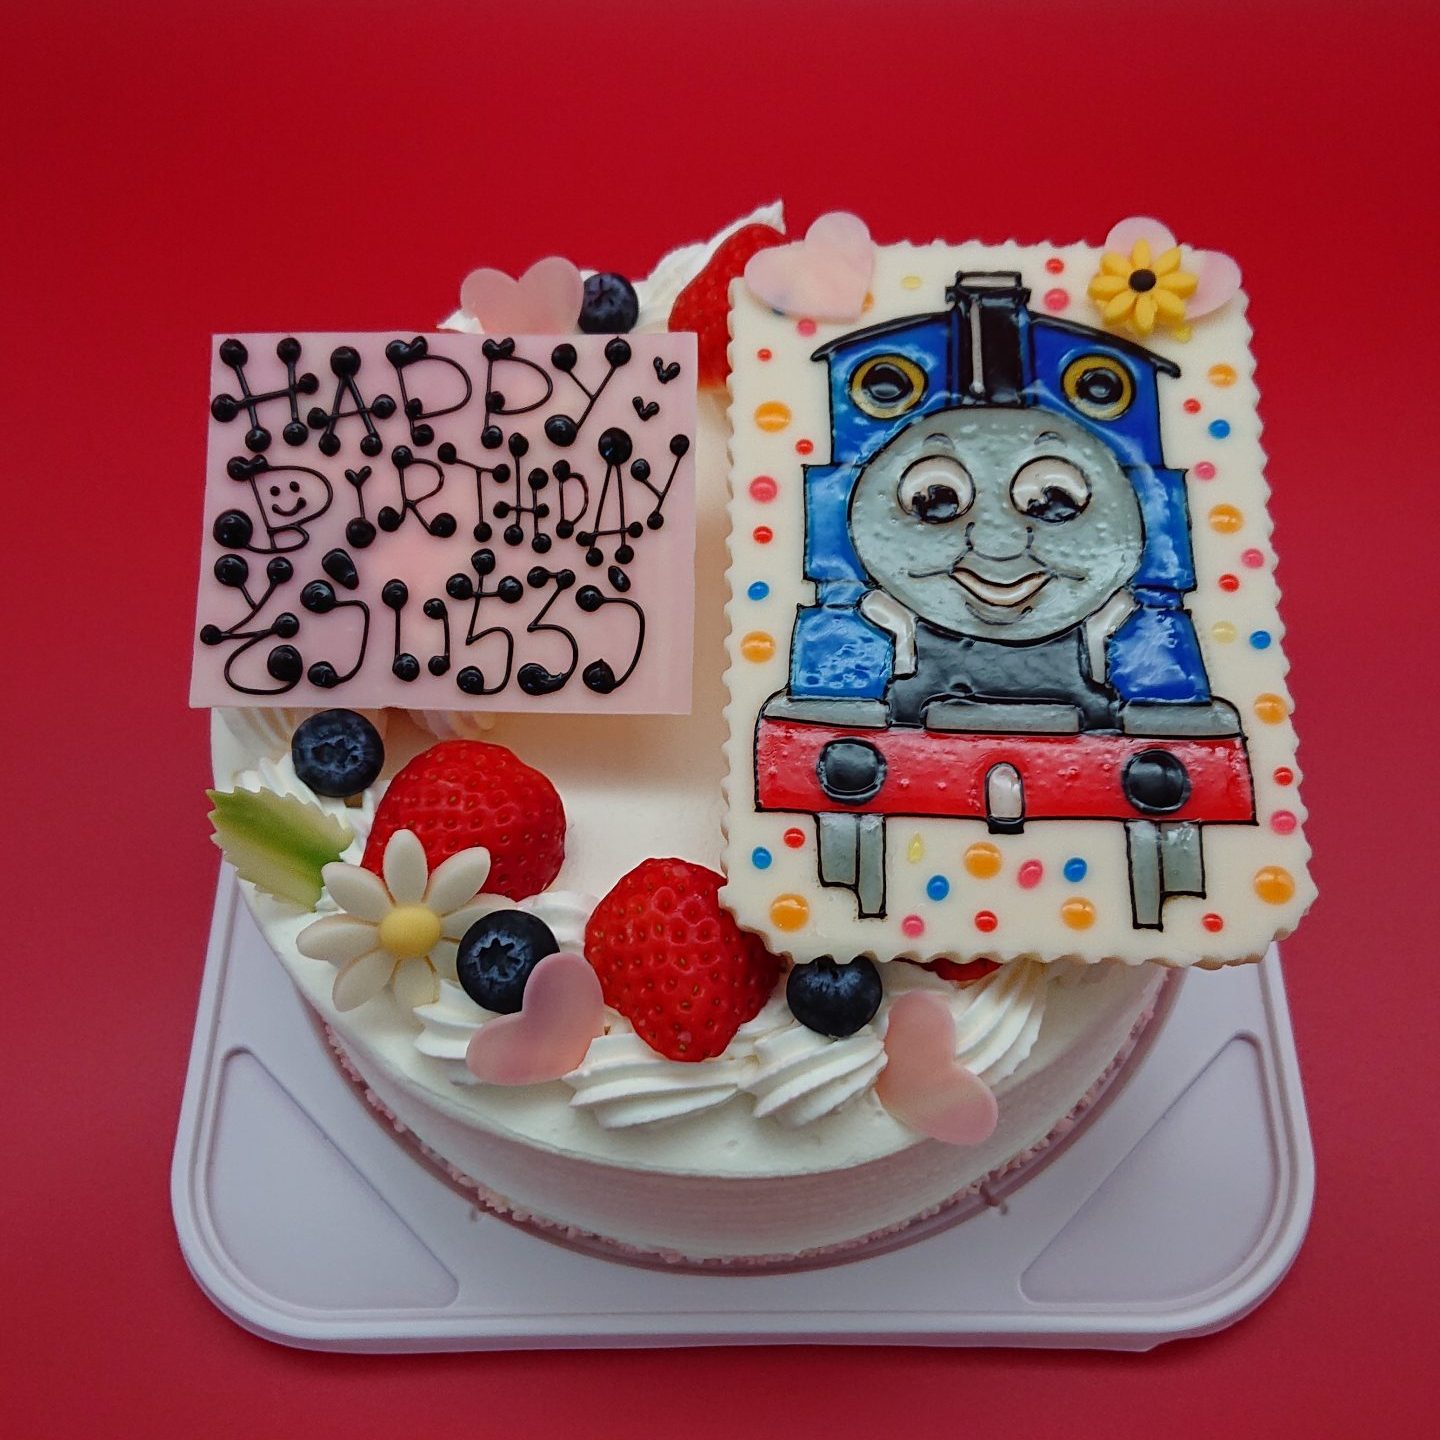 キャラクターイラストケーキ 沖縄の洋菓子 ケーキ屋 ココソラおかし店